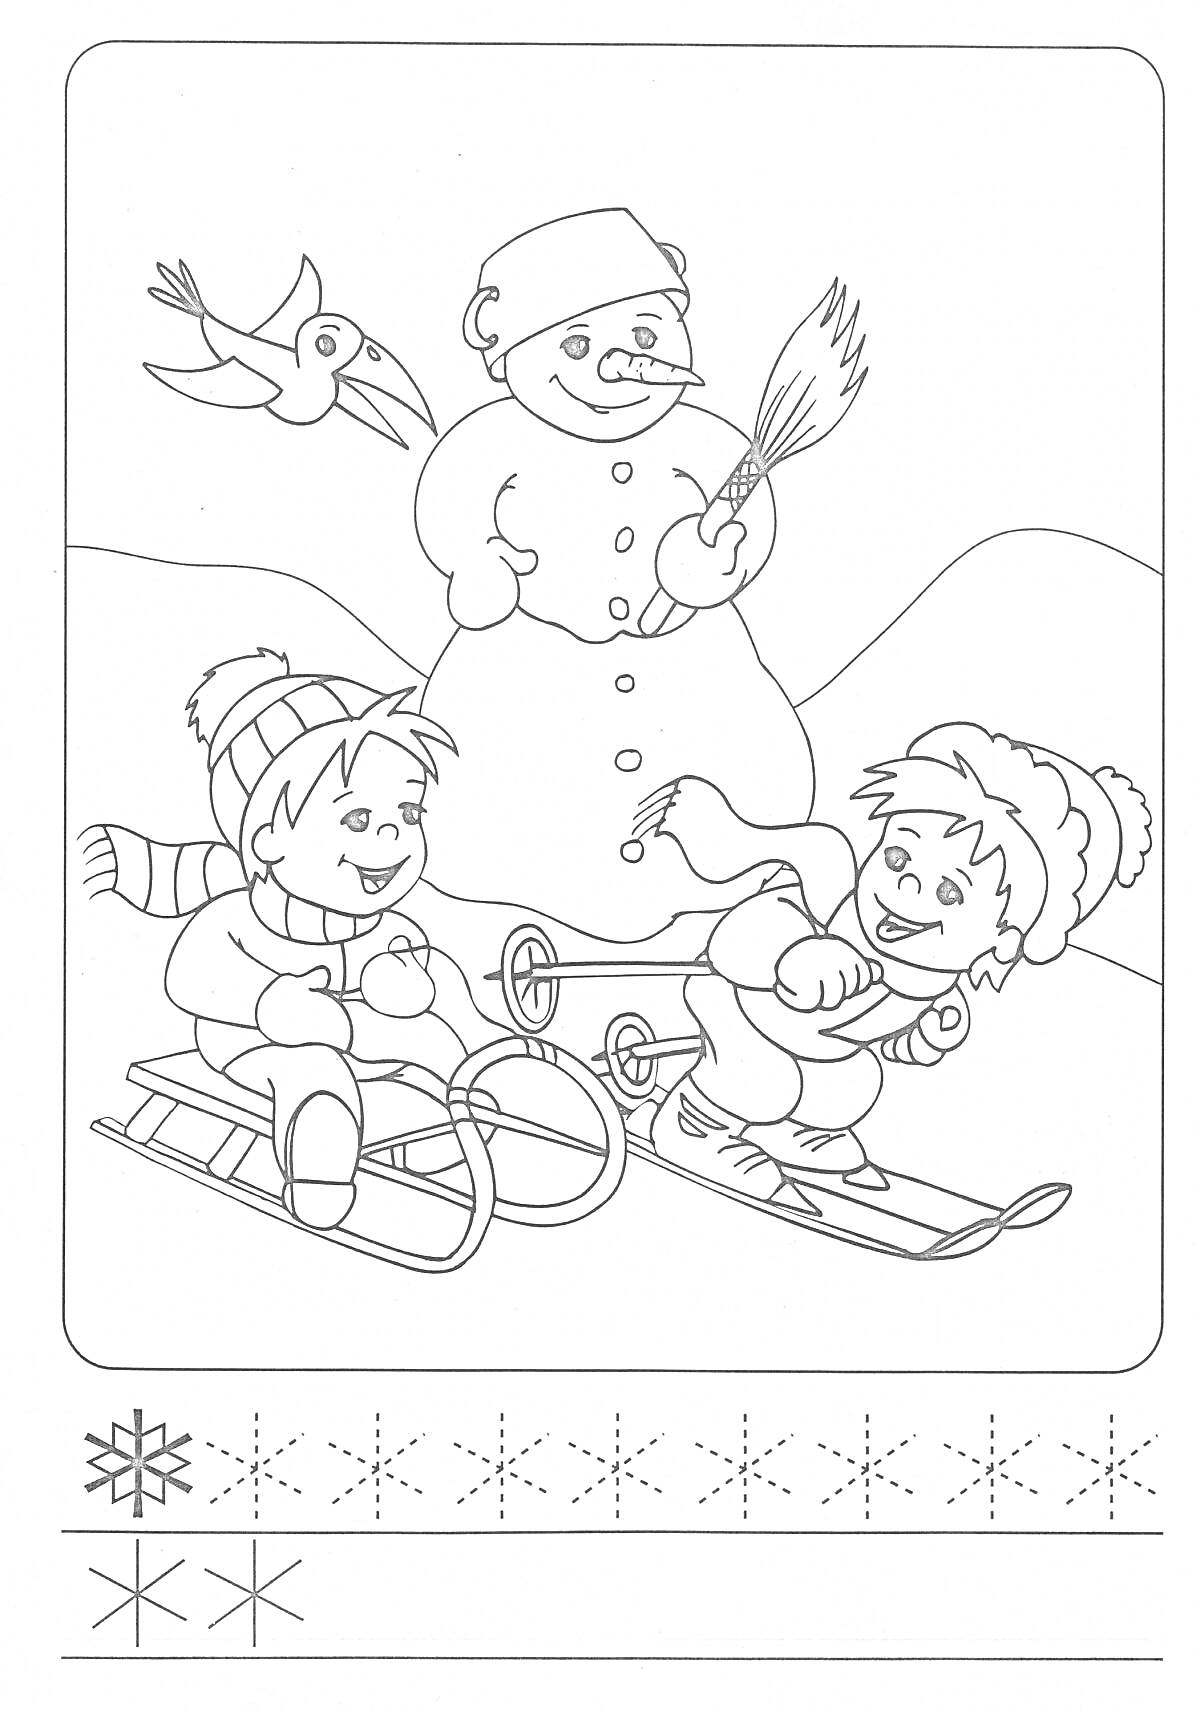 Раскраска Дети зимними забавами: ребенок на санках, ребенок на лыжах, снеговик, летящая птица